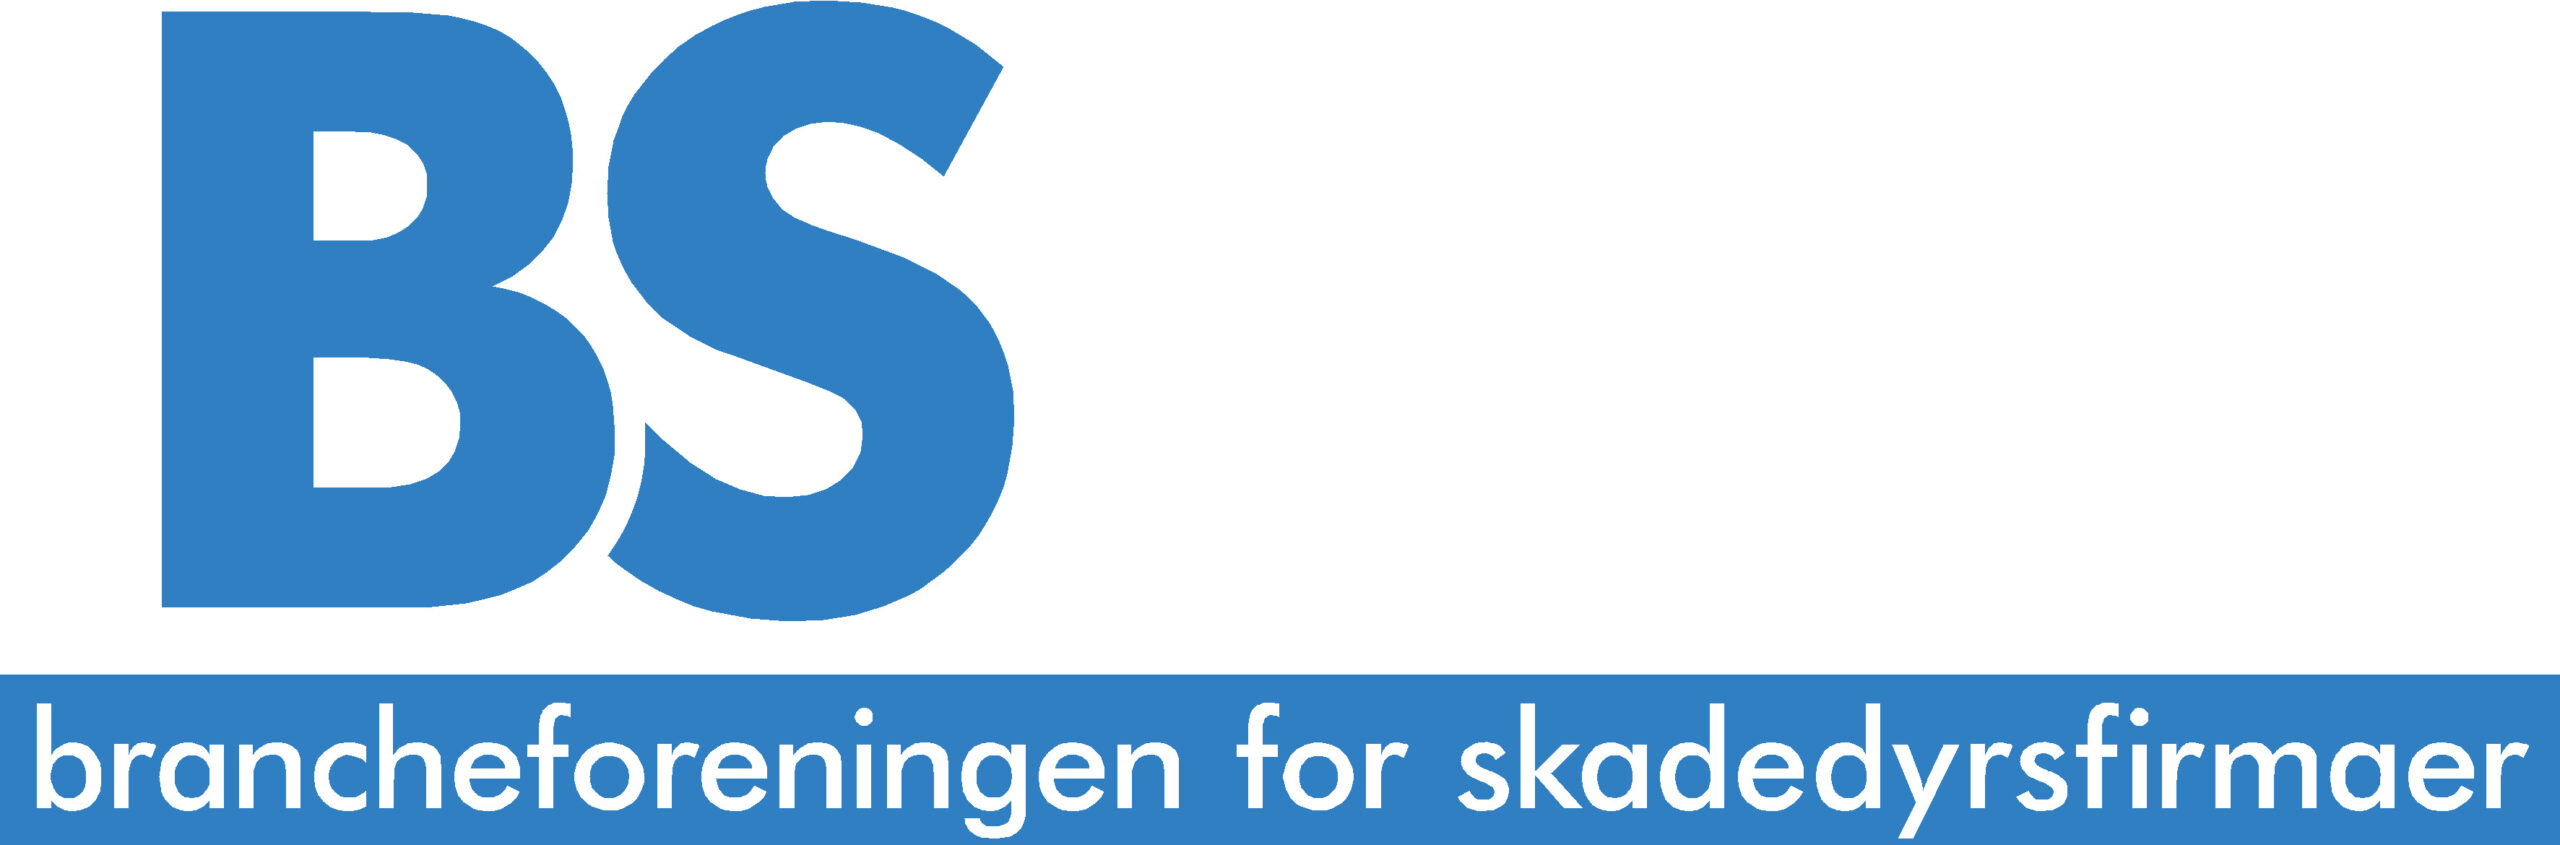 logo skadedyrsbranchen